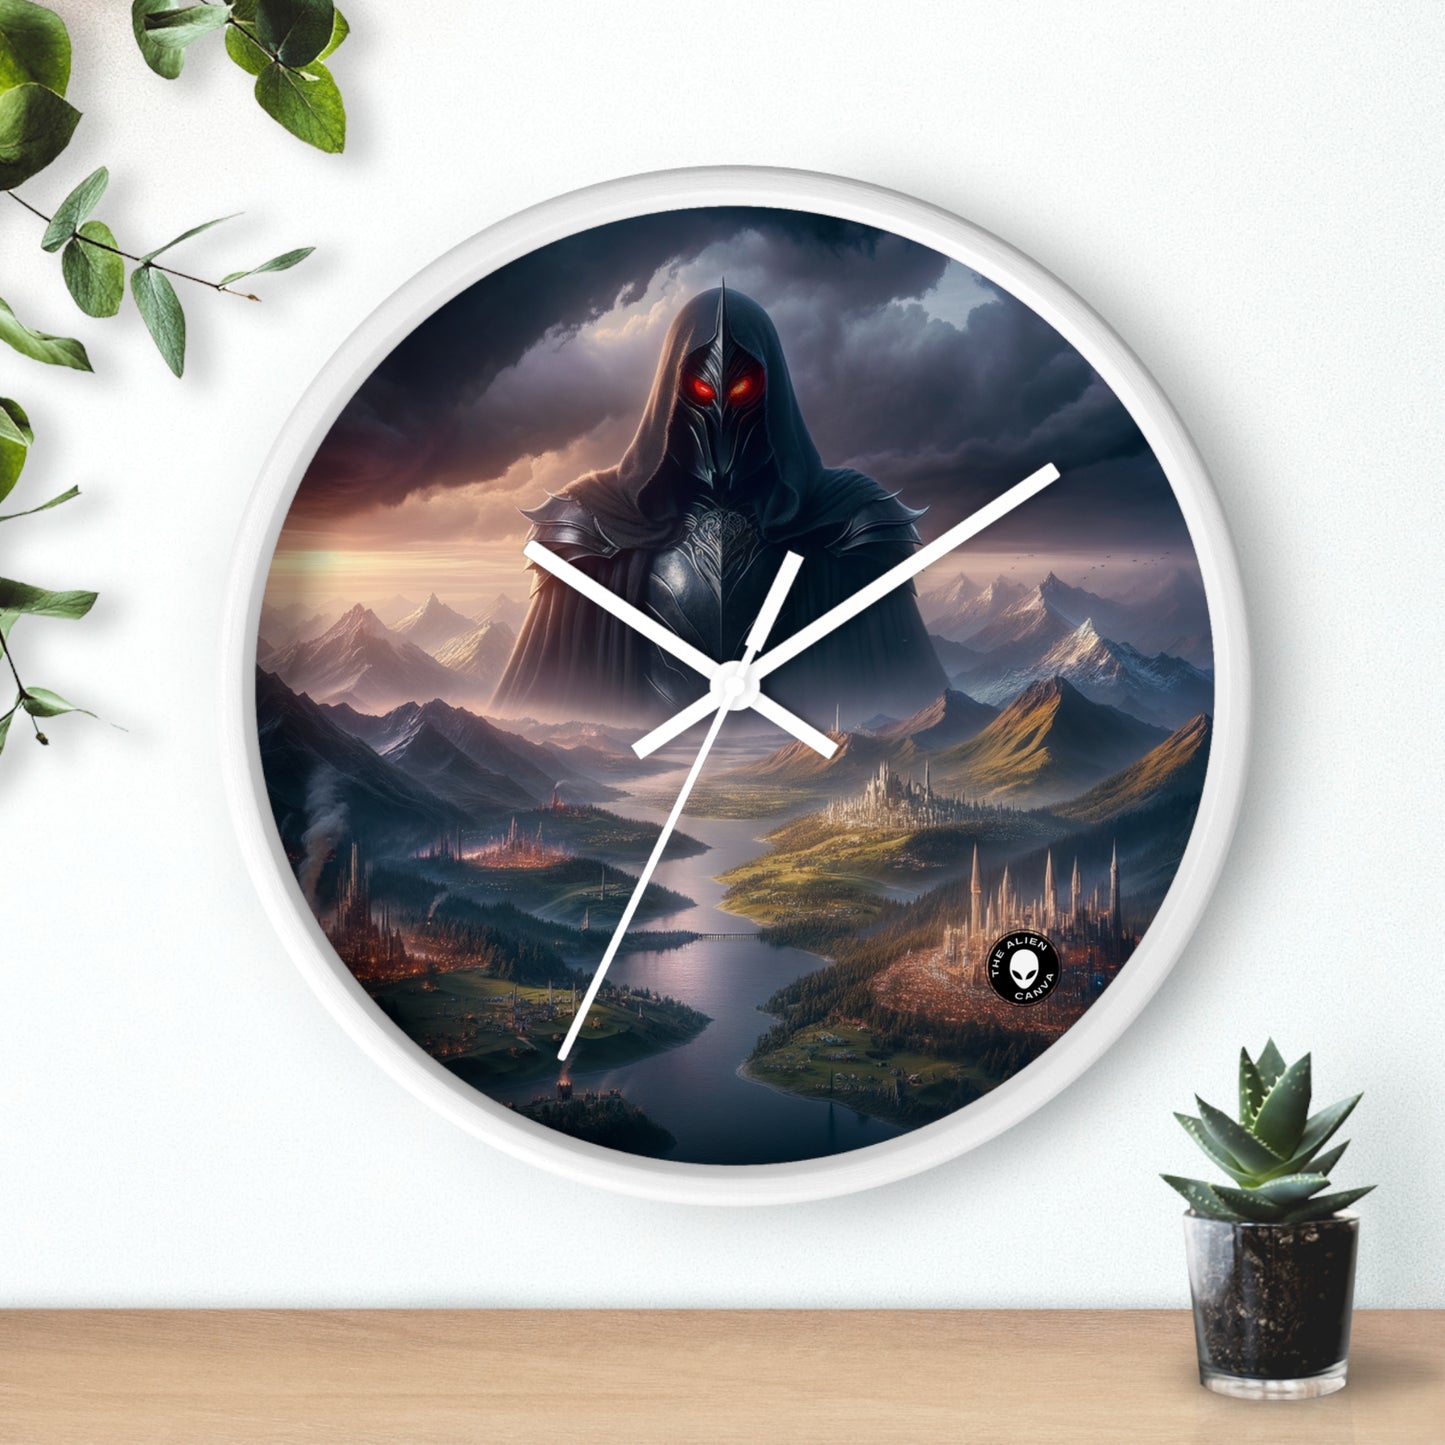 "La recuperación de Sauron: el oscurecimiento de la Tierra Media" - El reloj de pared alienígena